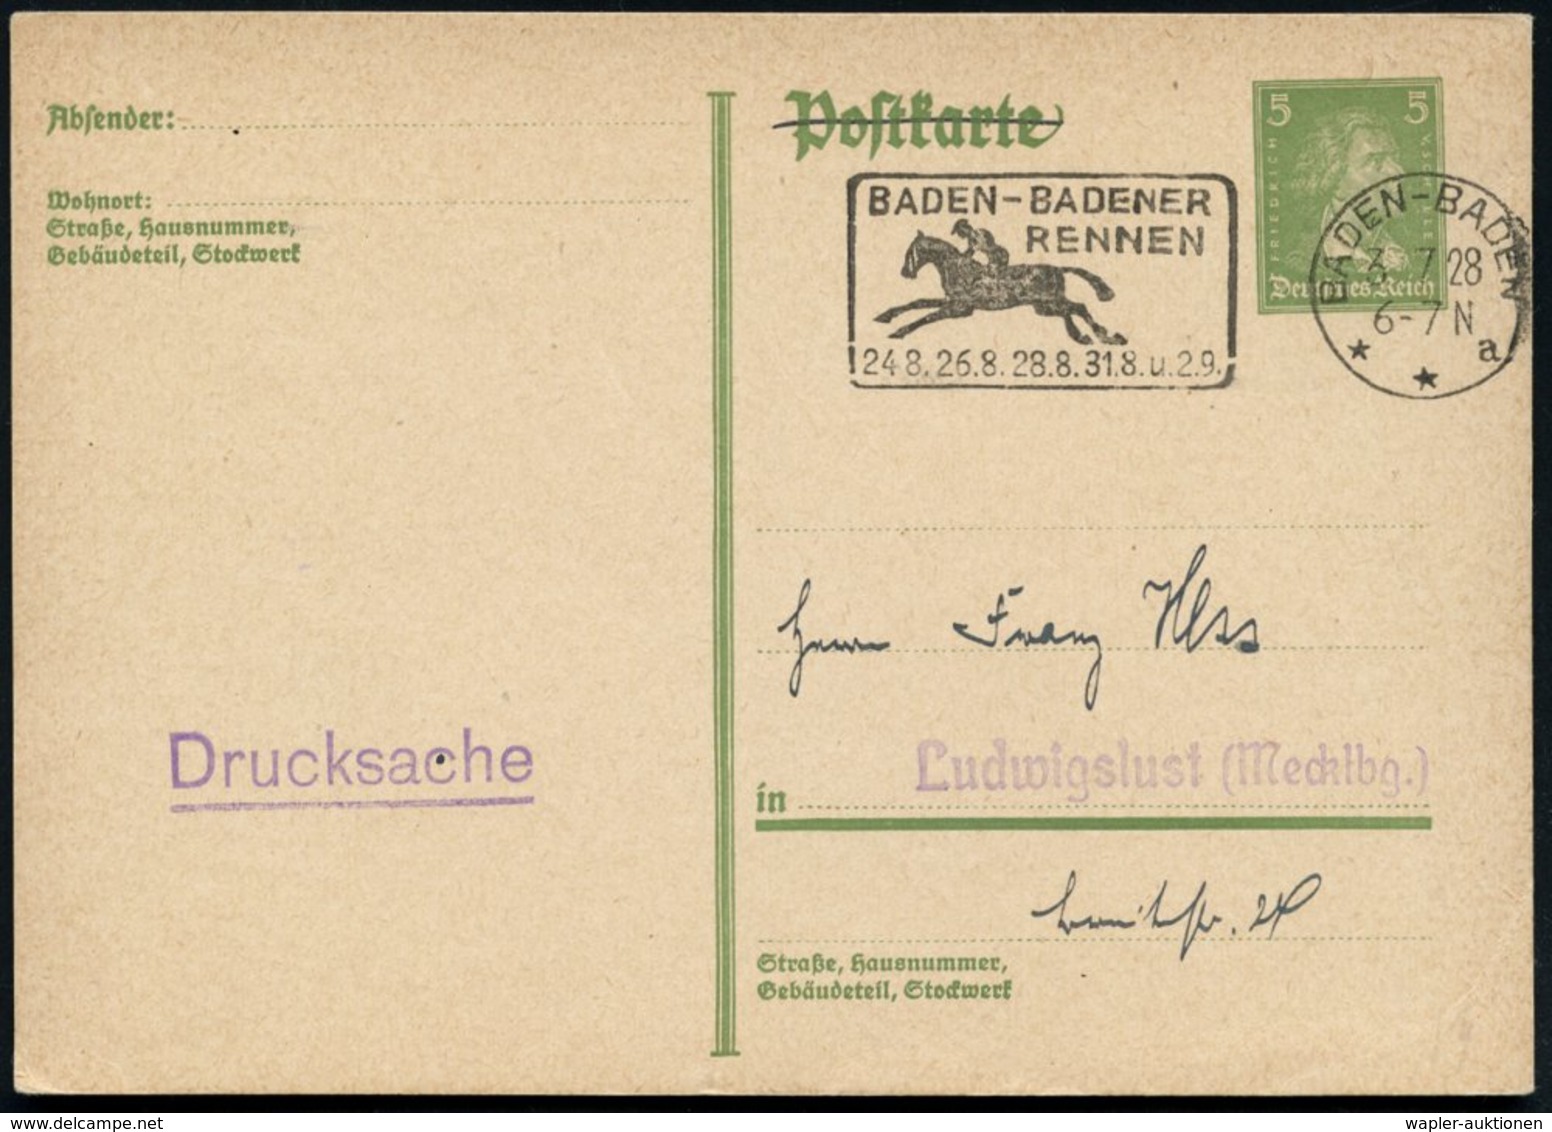 1928 (3.7.) BADEN-BADEN, Maschinen-Werbestempel: BADEN-BADENER RENNEN, 24.8., 26.8., 28.8., 31.8 U. 2.9. (Galopp-Reiter) - Other & Unclassified